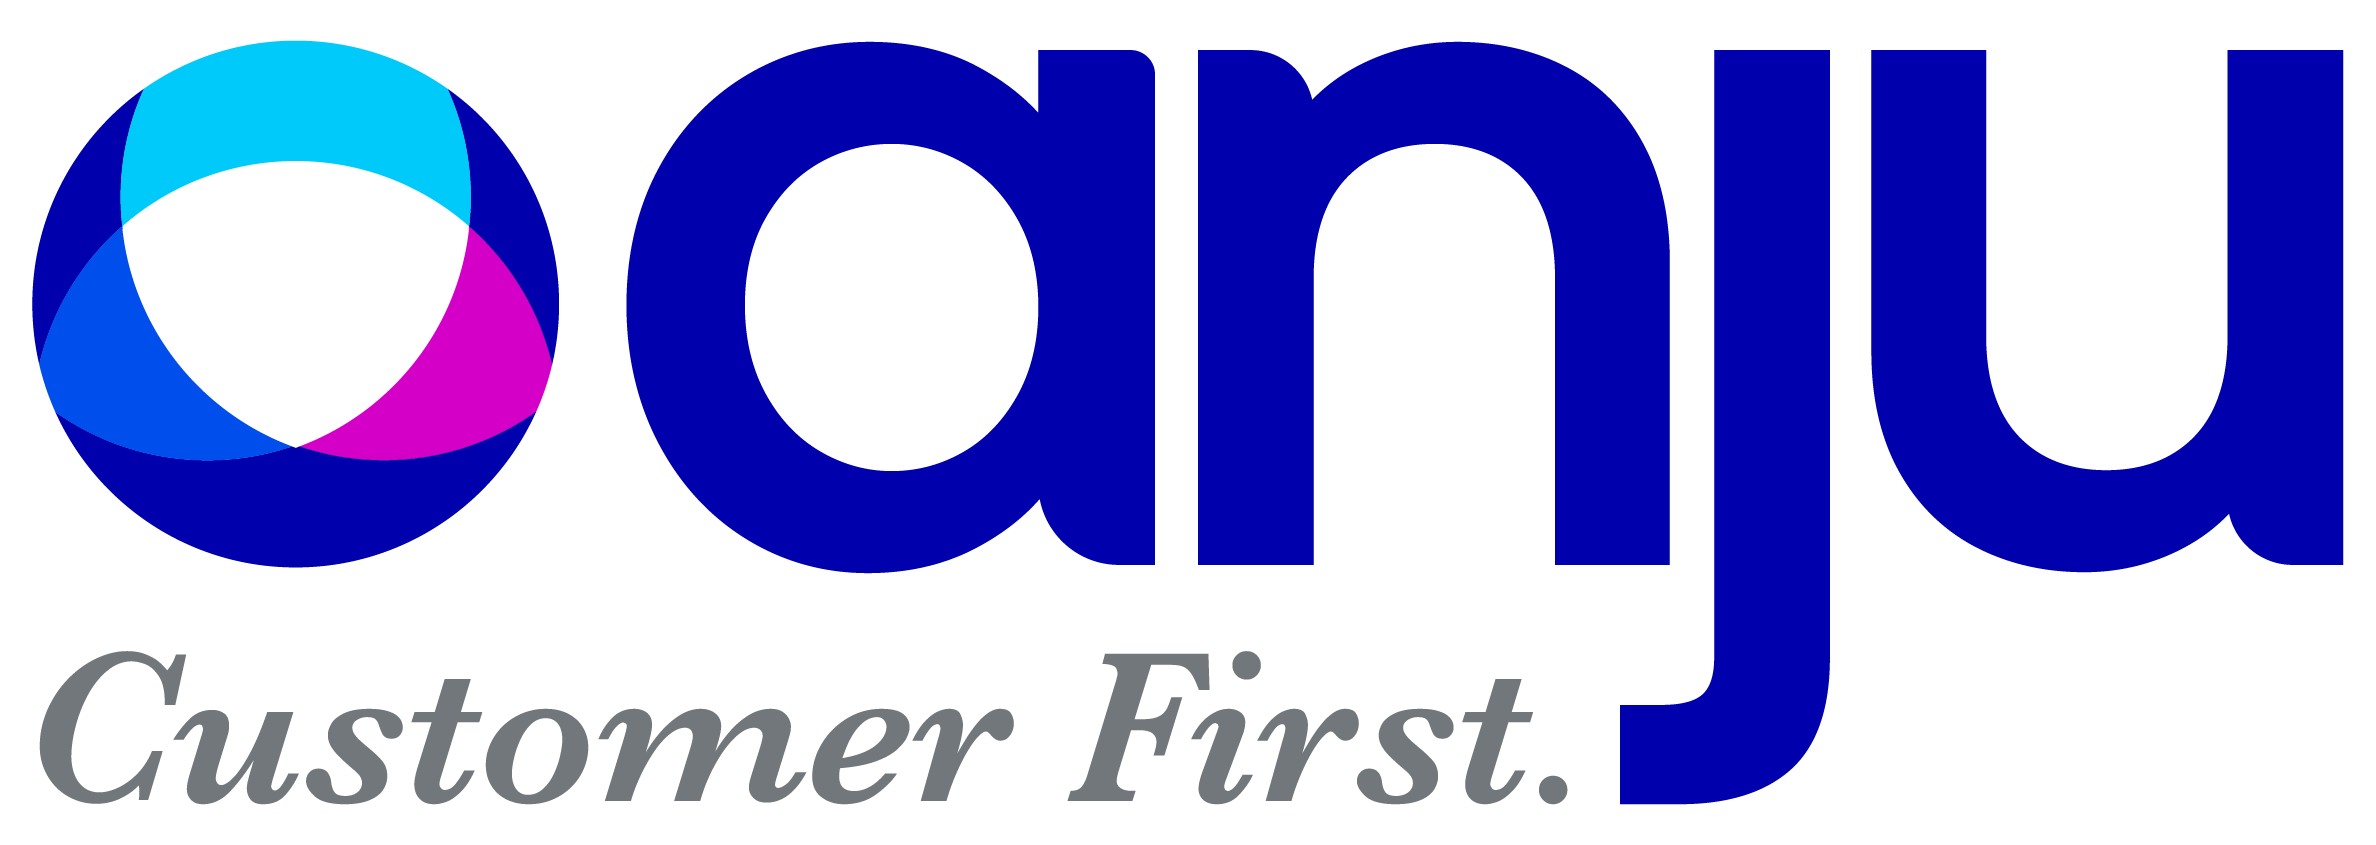 anju customer first logo